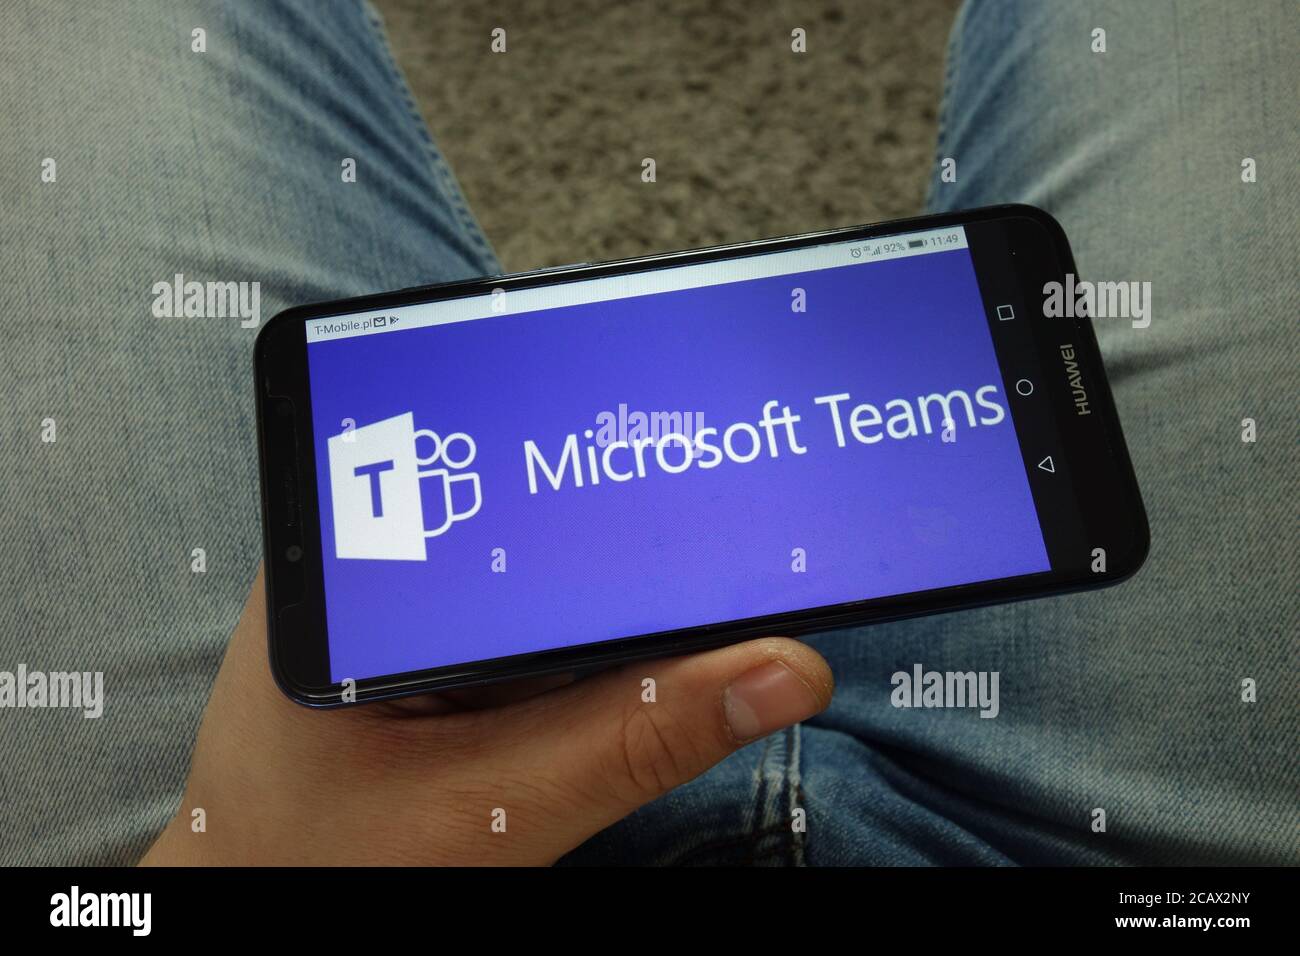 Uomo che tiene uno smartphone con il logo della piattaforma di comunicazione Microsoft Teams Foto Stock